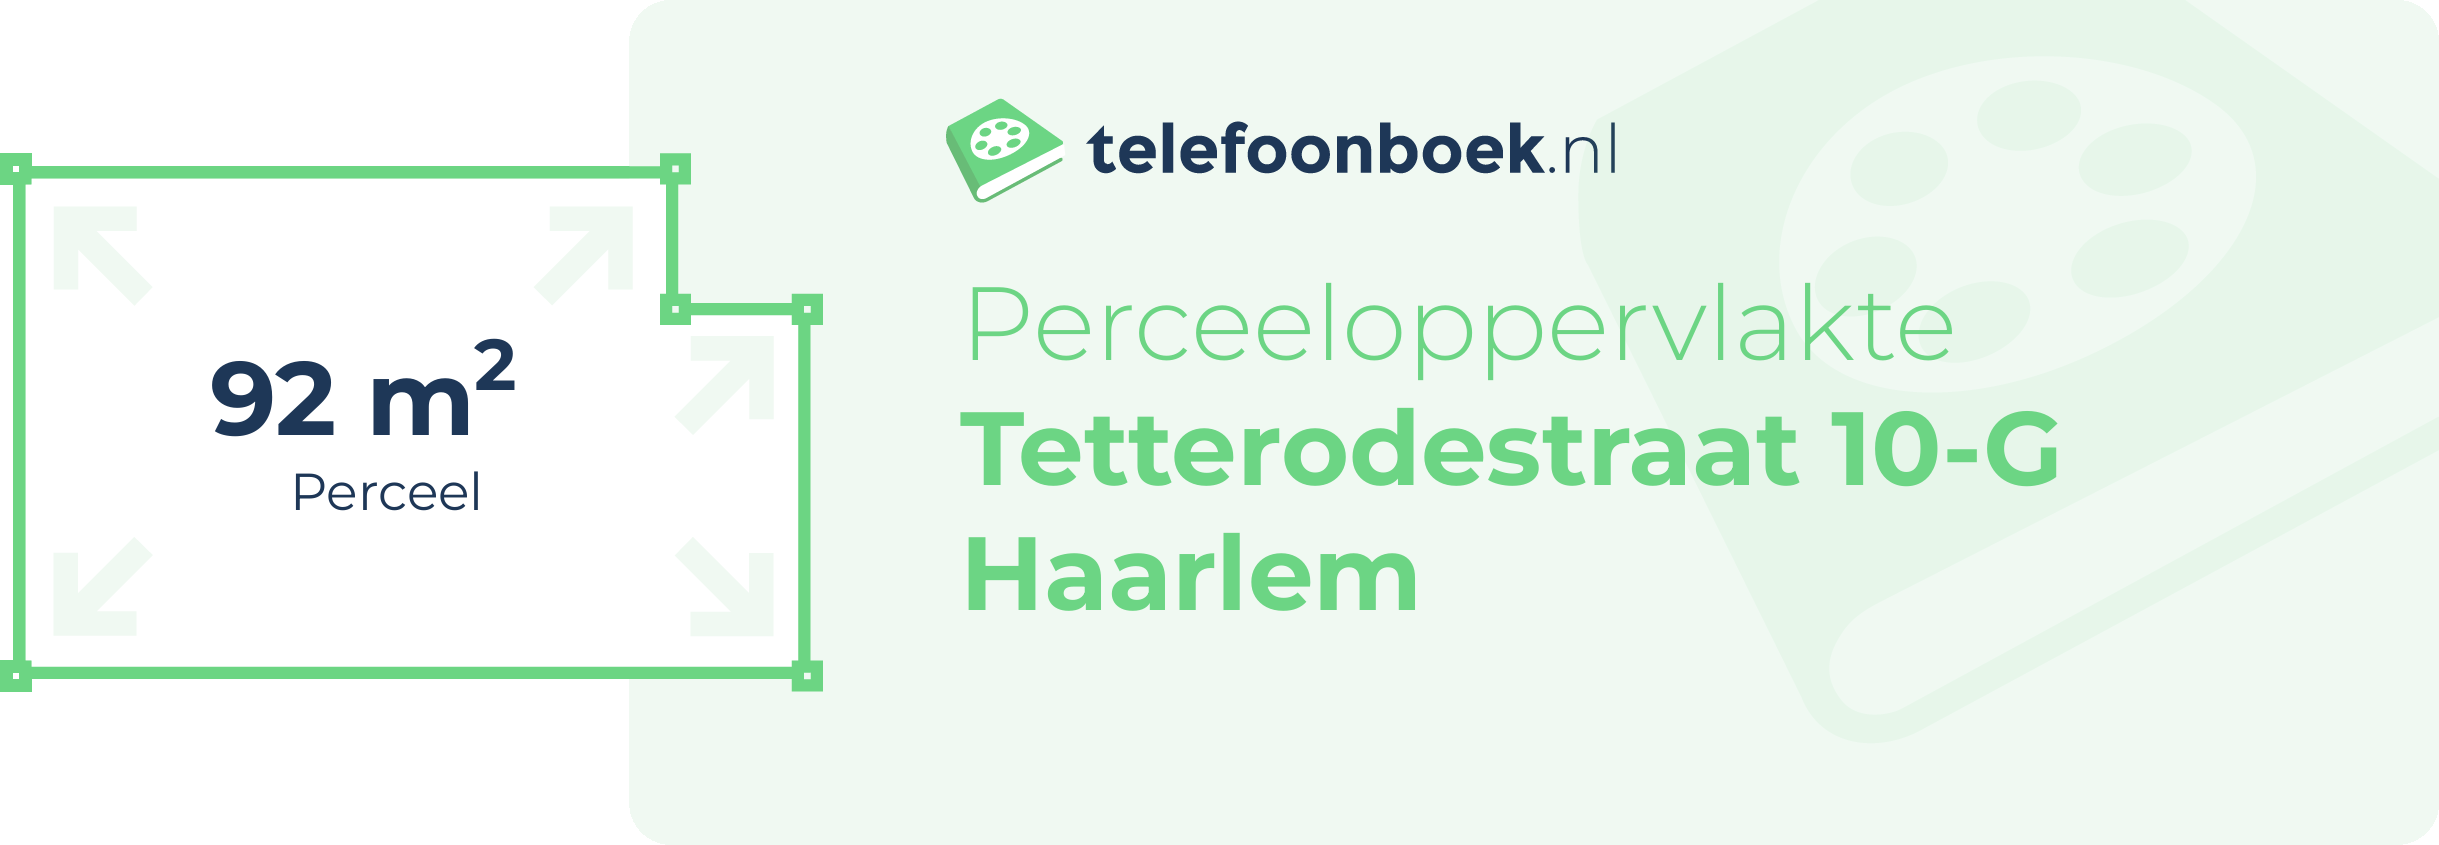 Perceeloppervlakte Tetterodestraat 10-G Haarlem